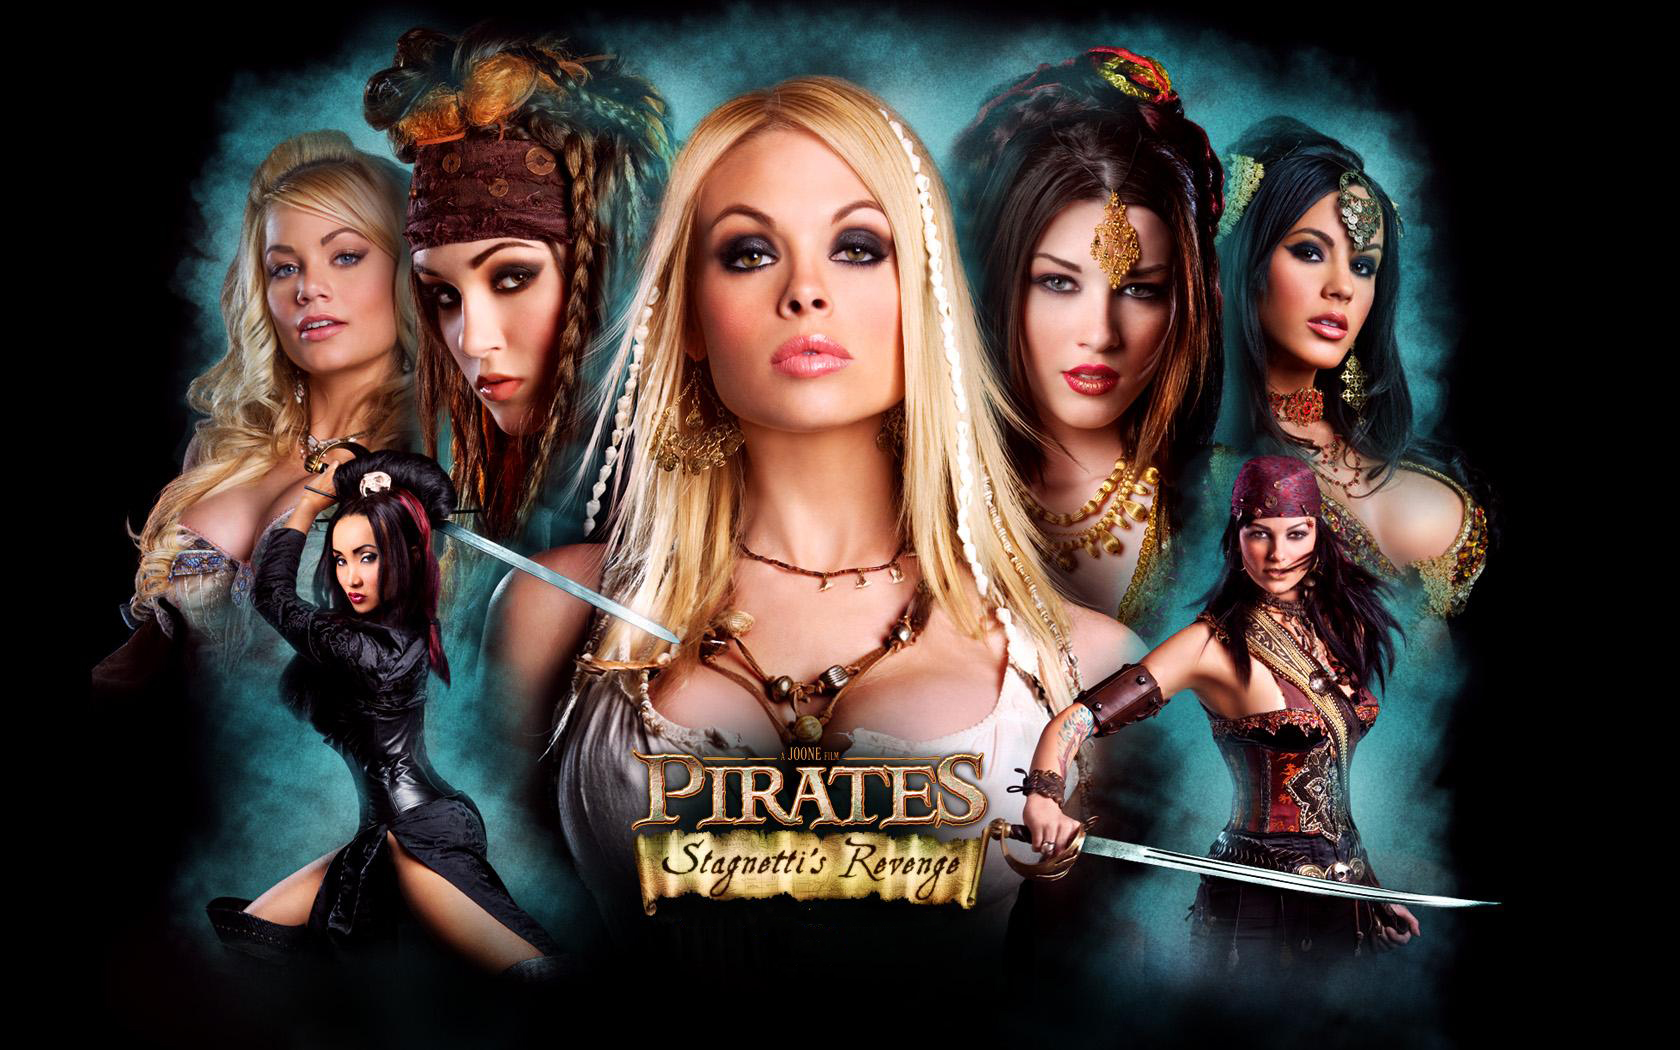 Pirates II: Stagnetti's Revenge (2008): $8 million